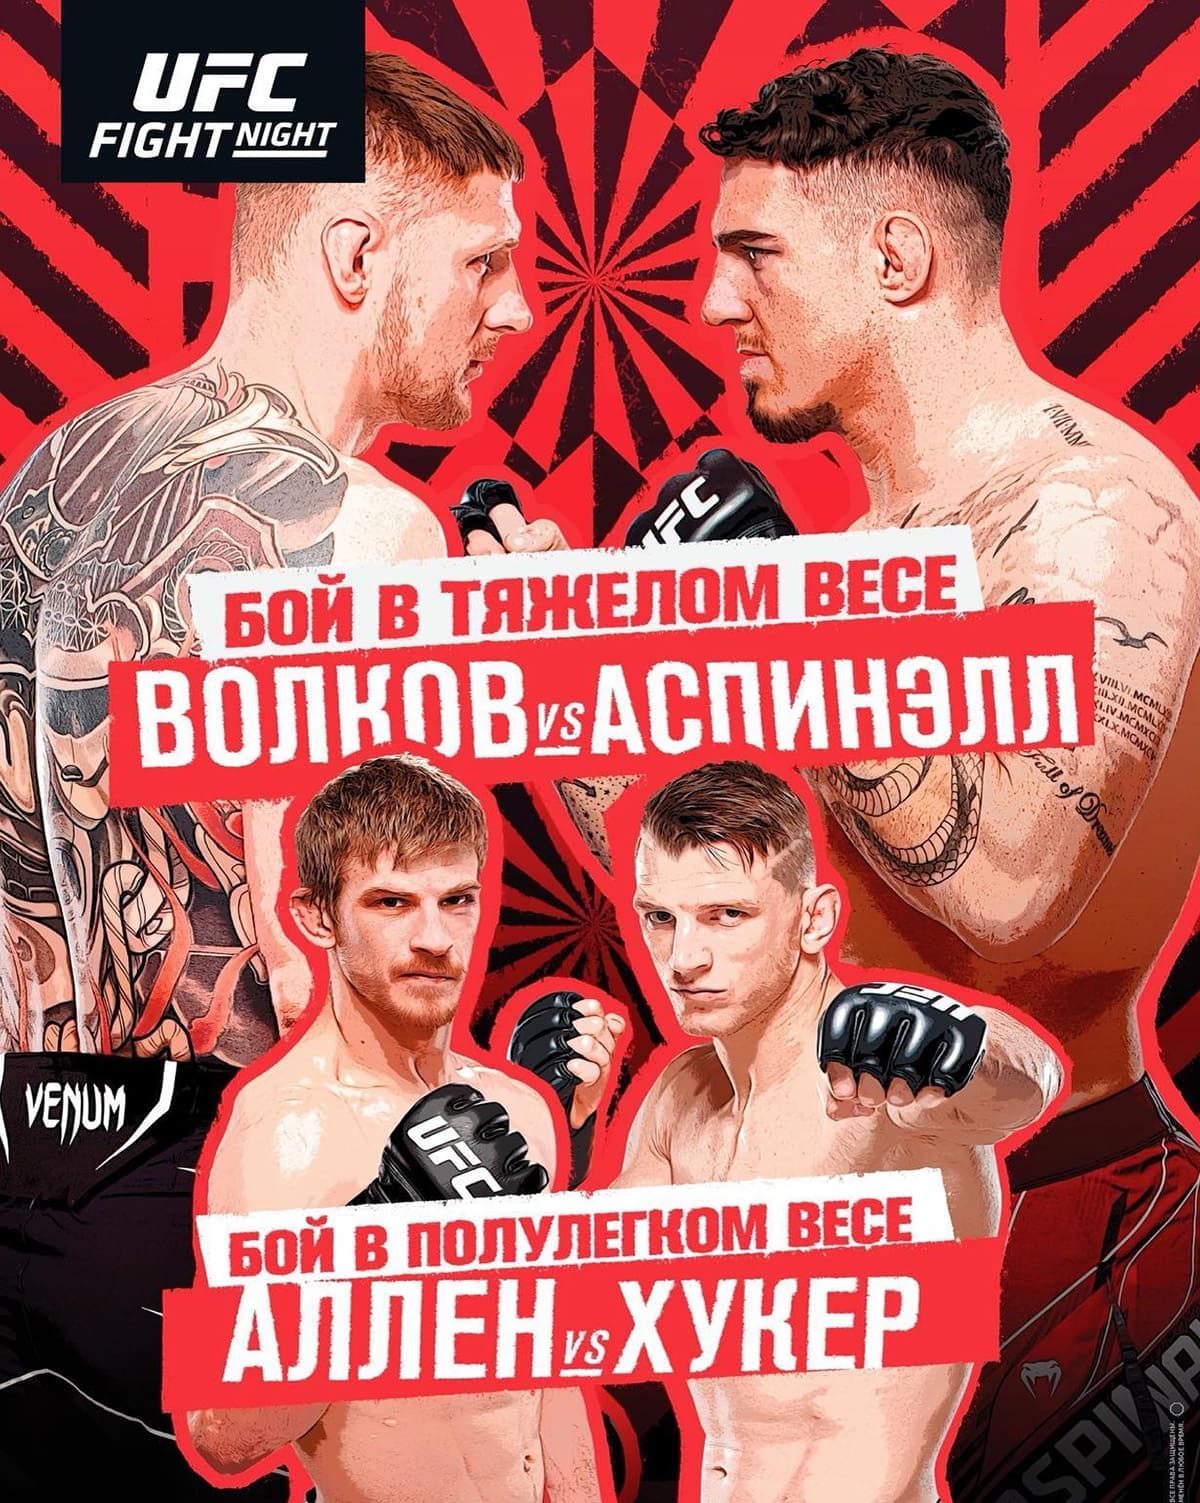 UFC Fight Night 204: Волков - Аспиналл дата проведения, кард, участники и результаты